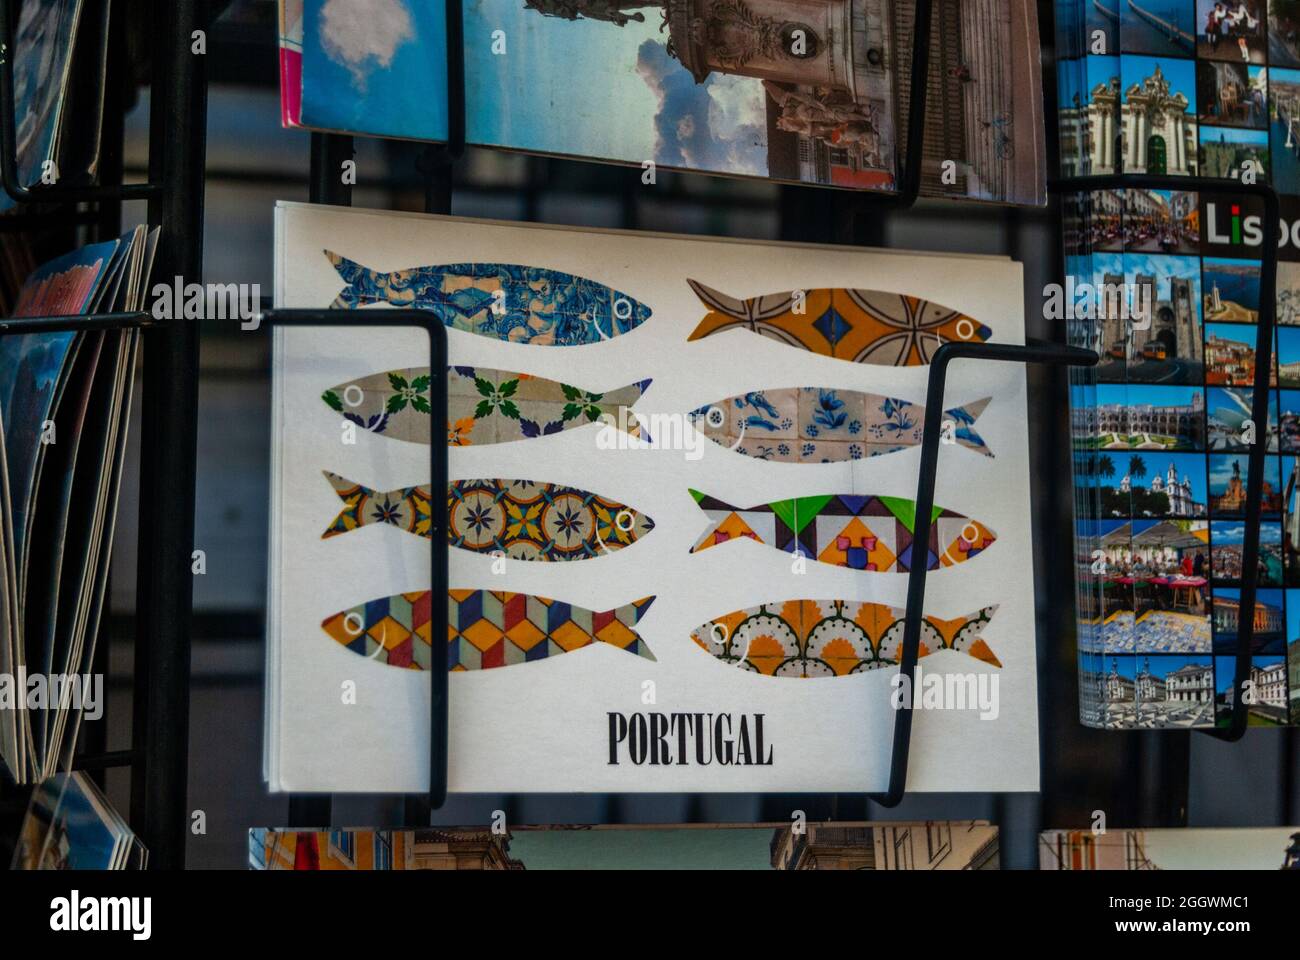 Lissabon, Portugal - 29. Juli 2021: Ein Postkartenregal mit bunten dekorativen portugiesischen Fischbildern und Portugal Text - Selective Focus, Lisbo Stockfoto